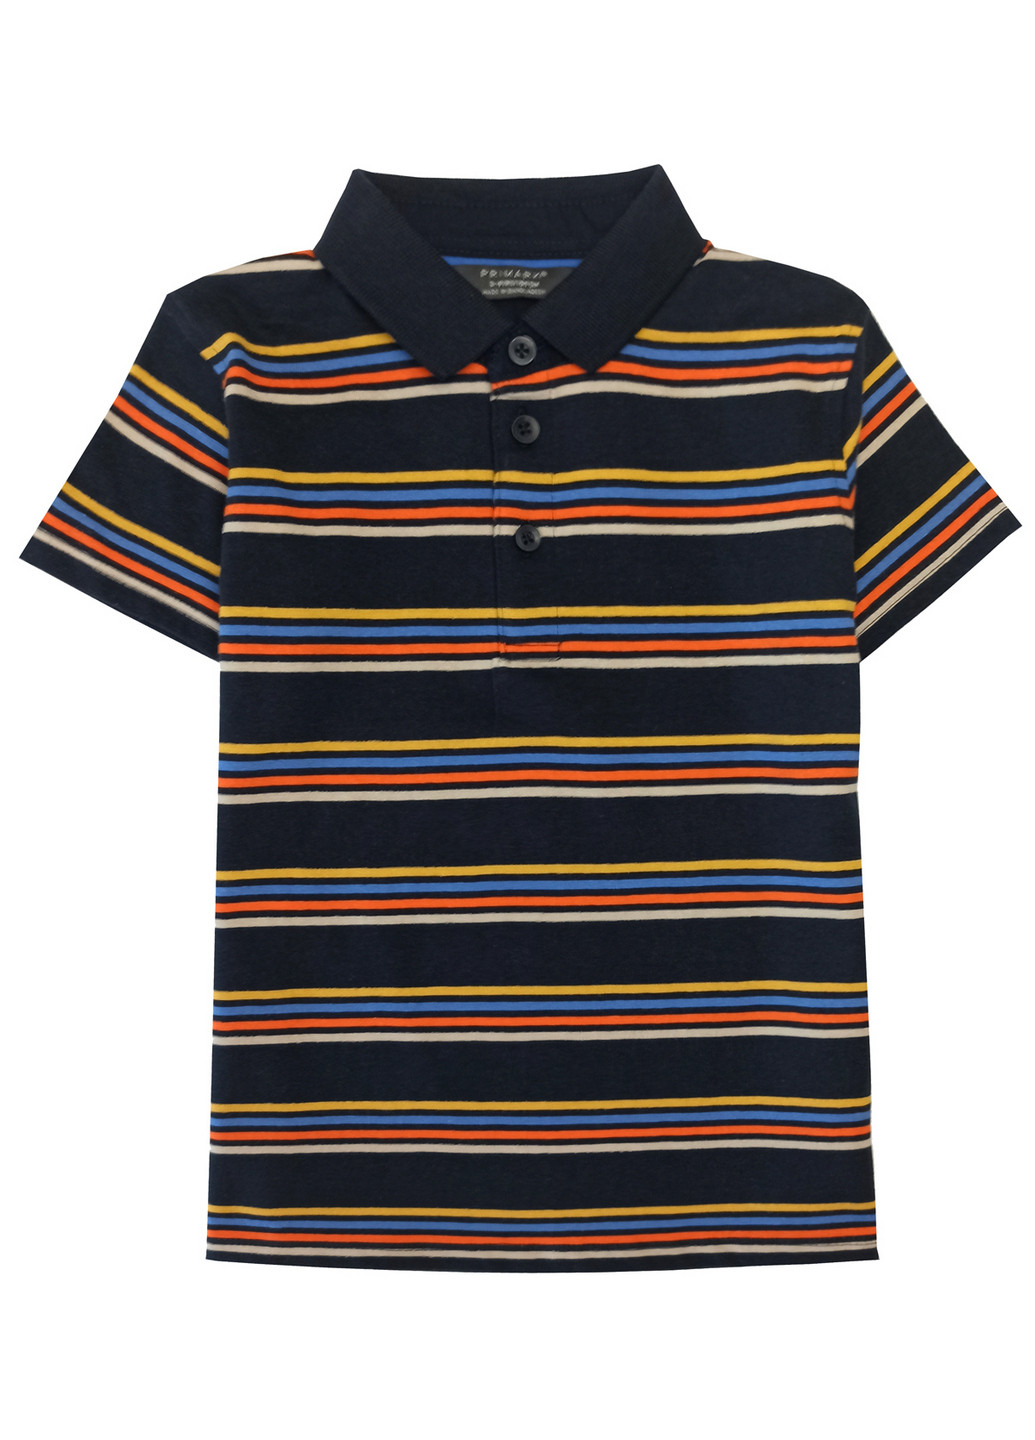 Цветная детская футболка-поло для мальчика Primark в полоску